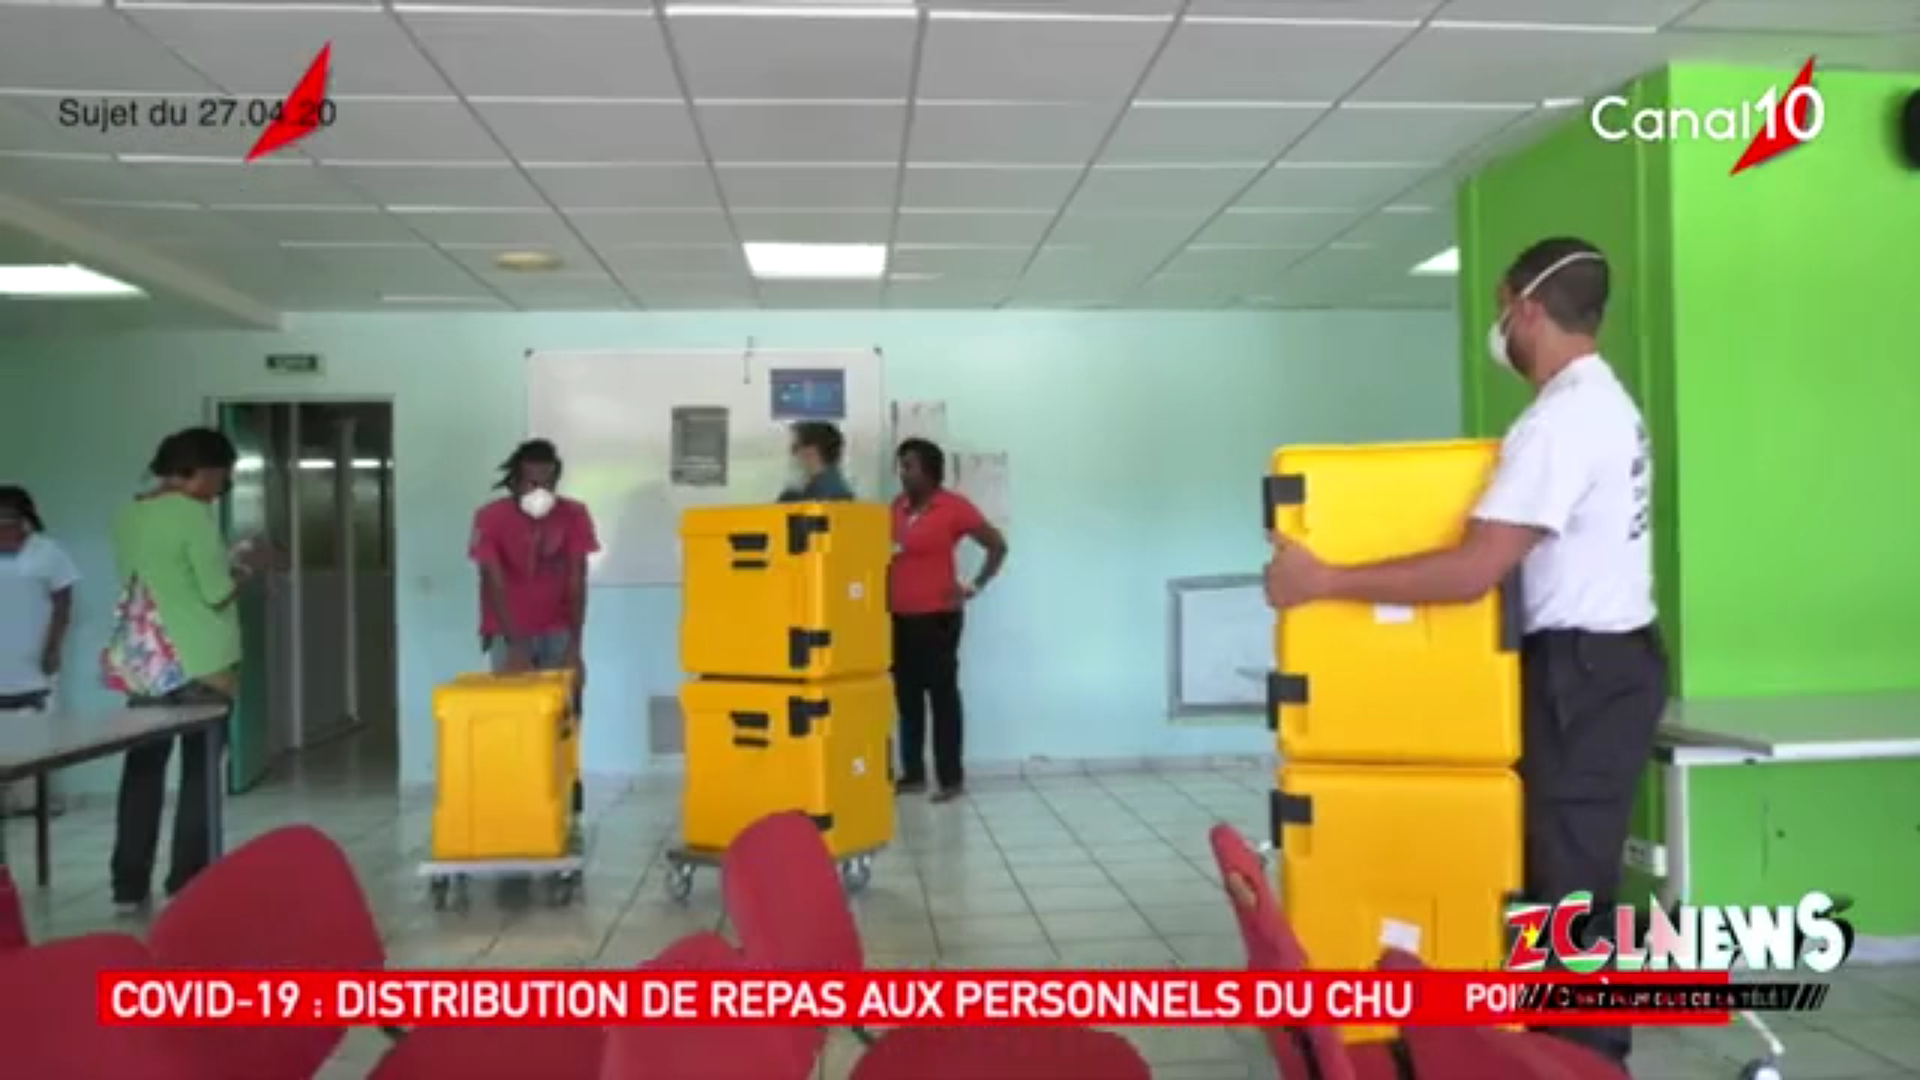 [Vidéo] covid 19 La région Guadeloupe organise une distribution de repas au personnel soignant (Canal 10)